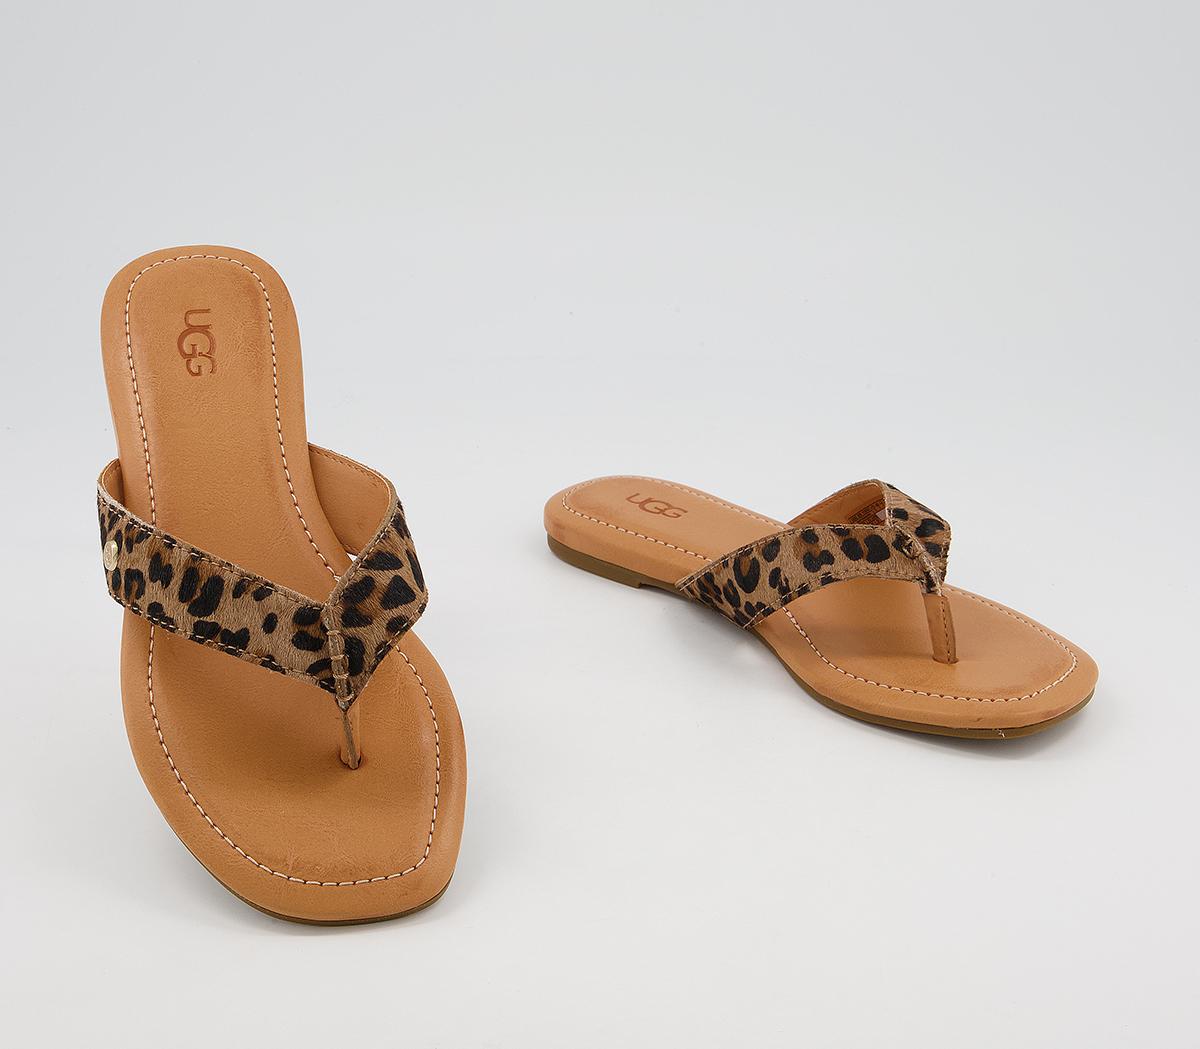 UGG Tuolumne Flip Flops Leopard - Women’s Flip-Flops